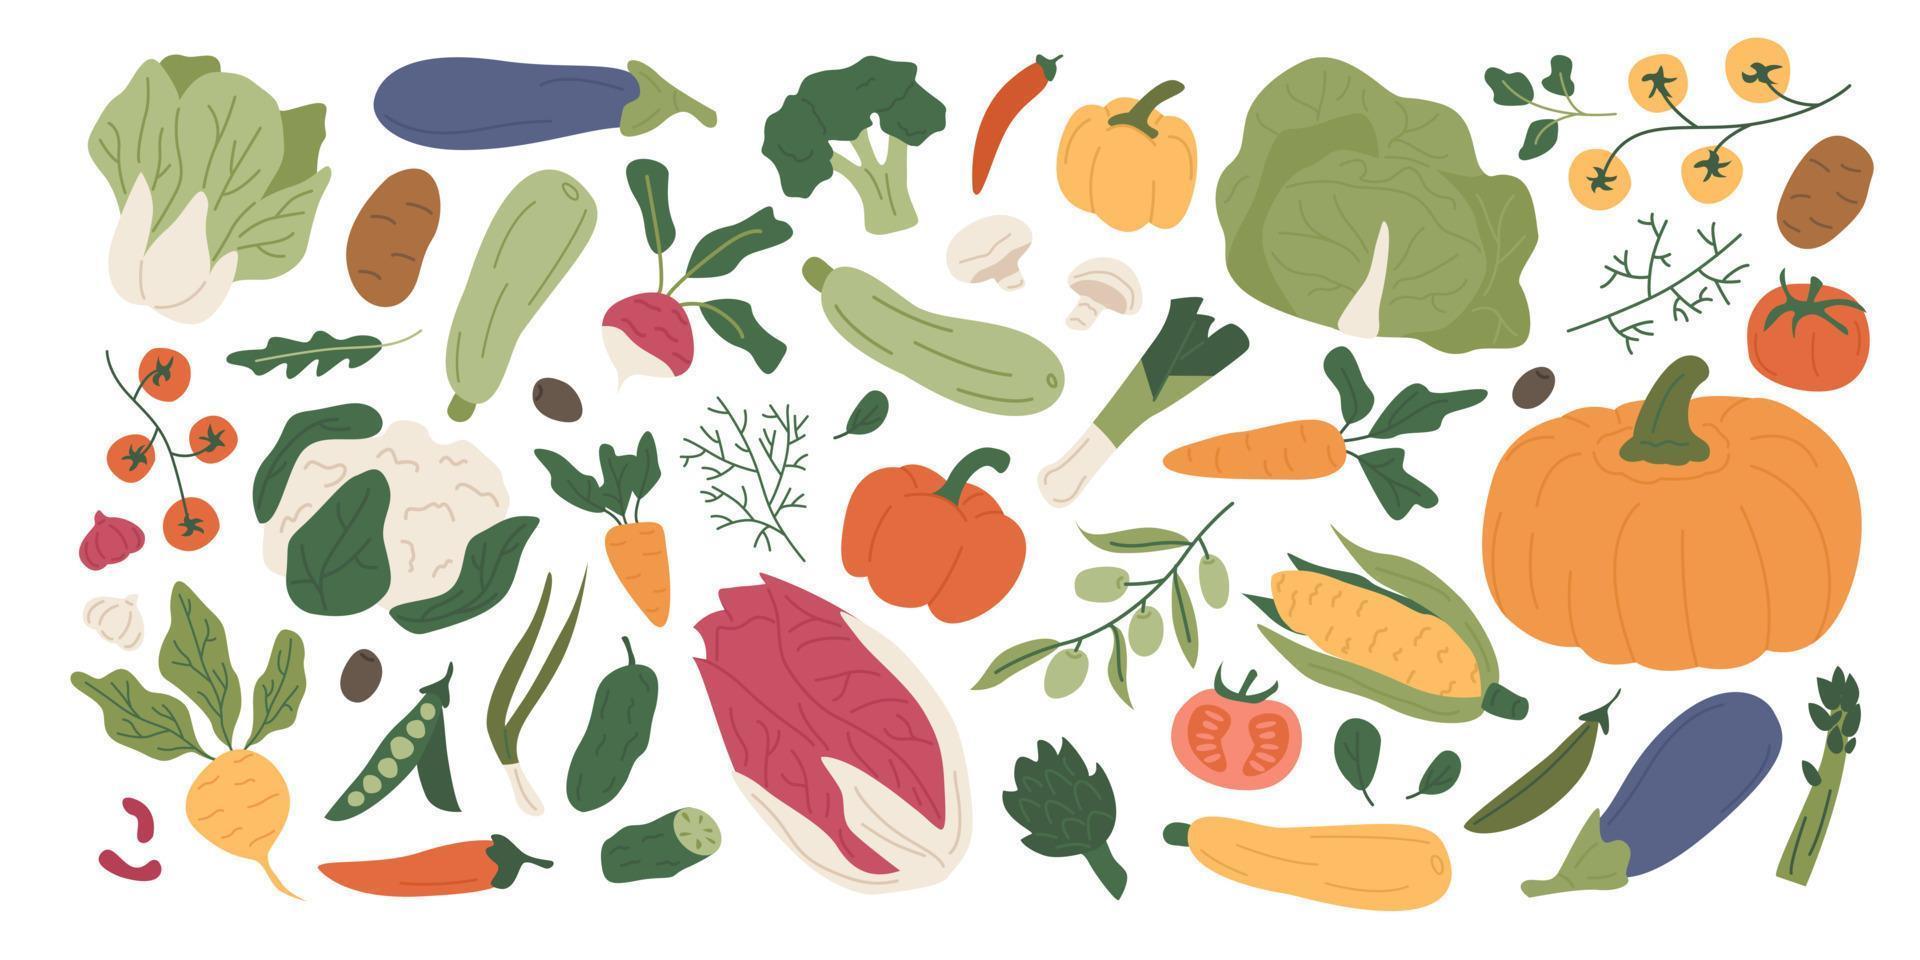 colorida colección de verduras orgánicas frescas y verduras comestibles. conjunto de cosecha agrícola de verano y otoño, cultivos naturales, ensaladas, hierbas. comida vegetariana saludable. ilustración en estilo plano. vector